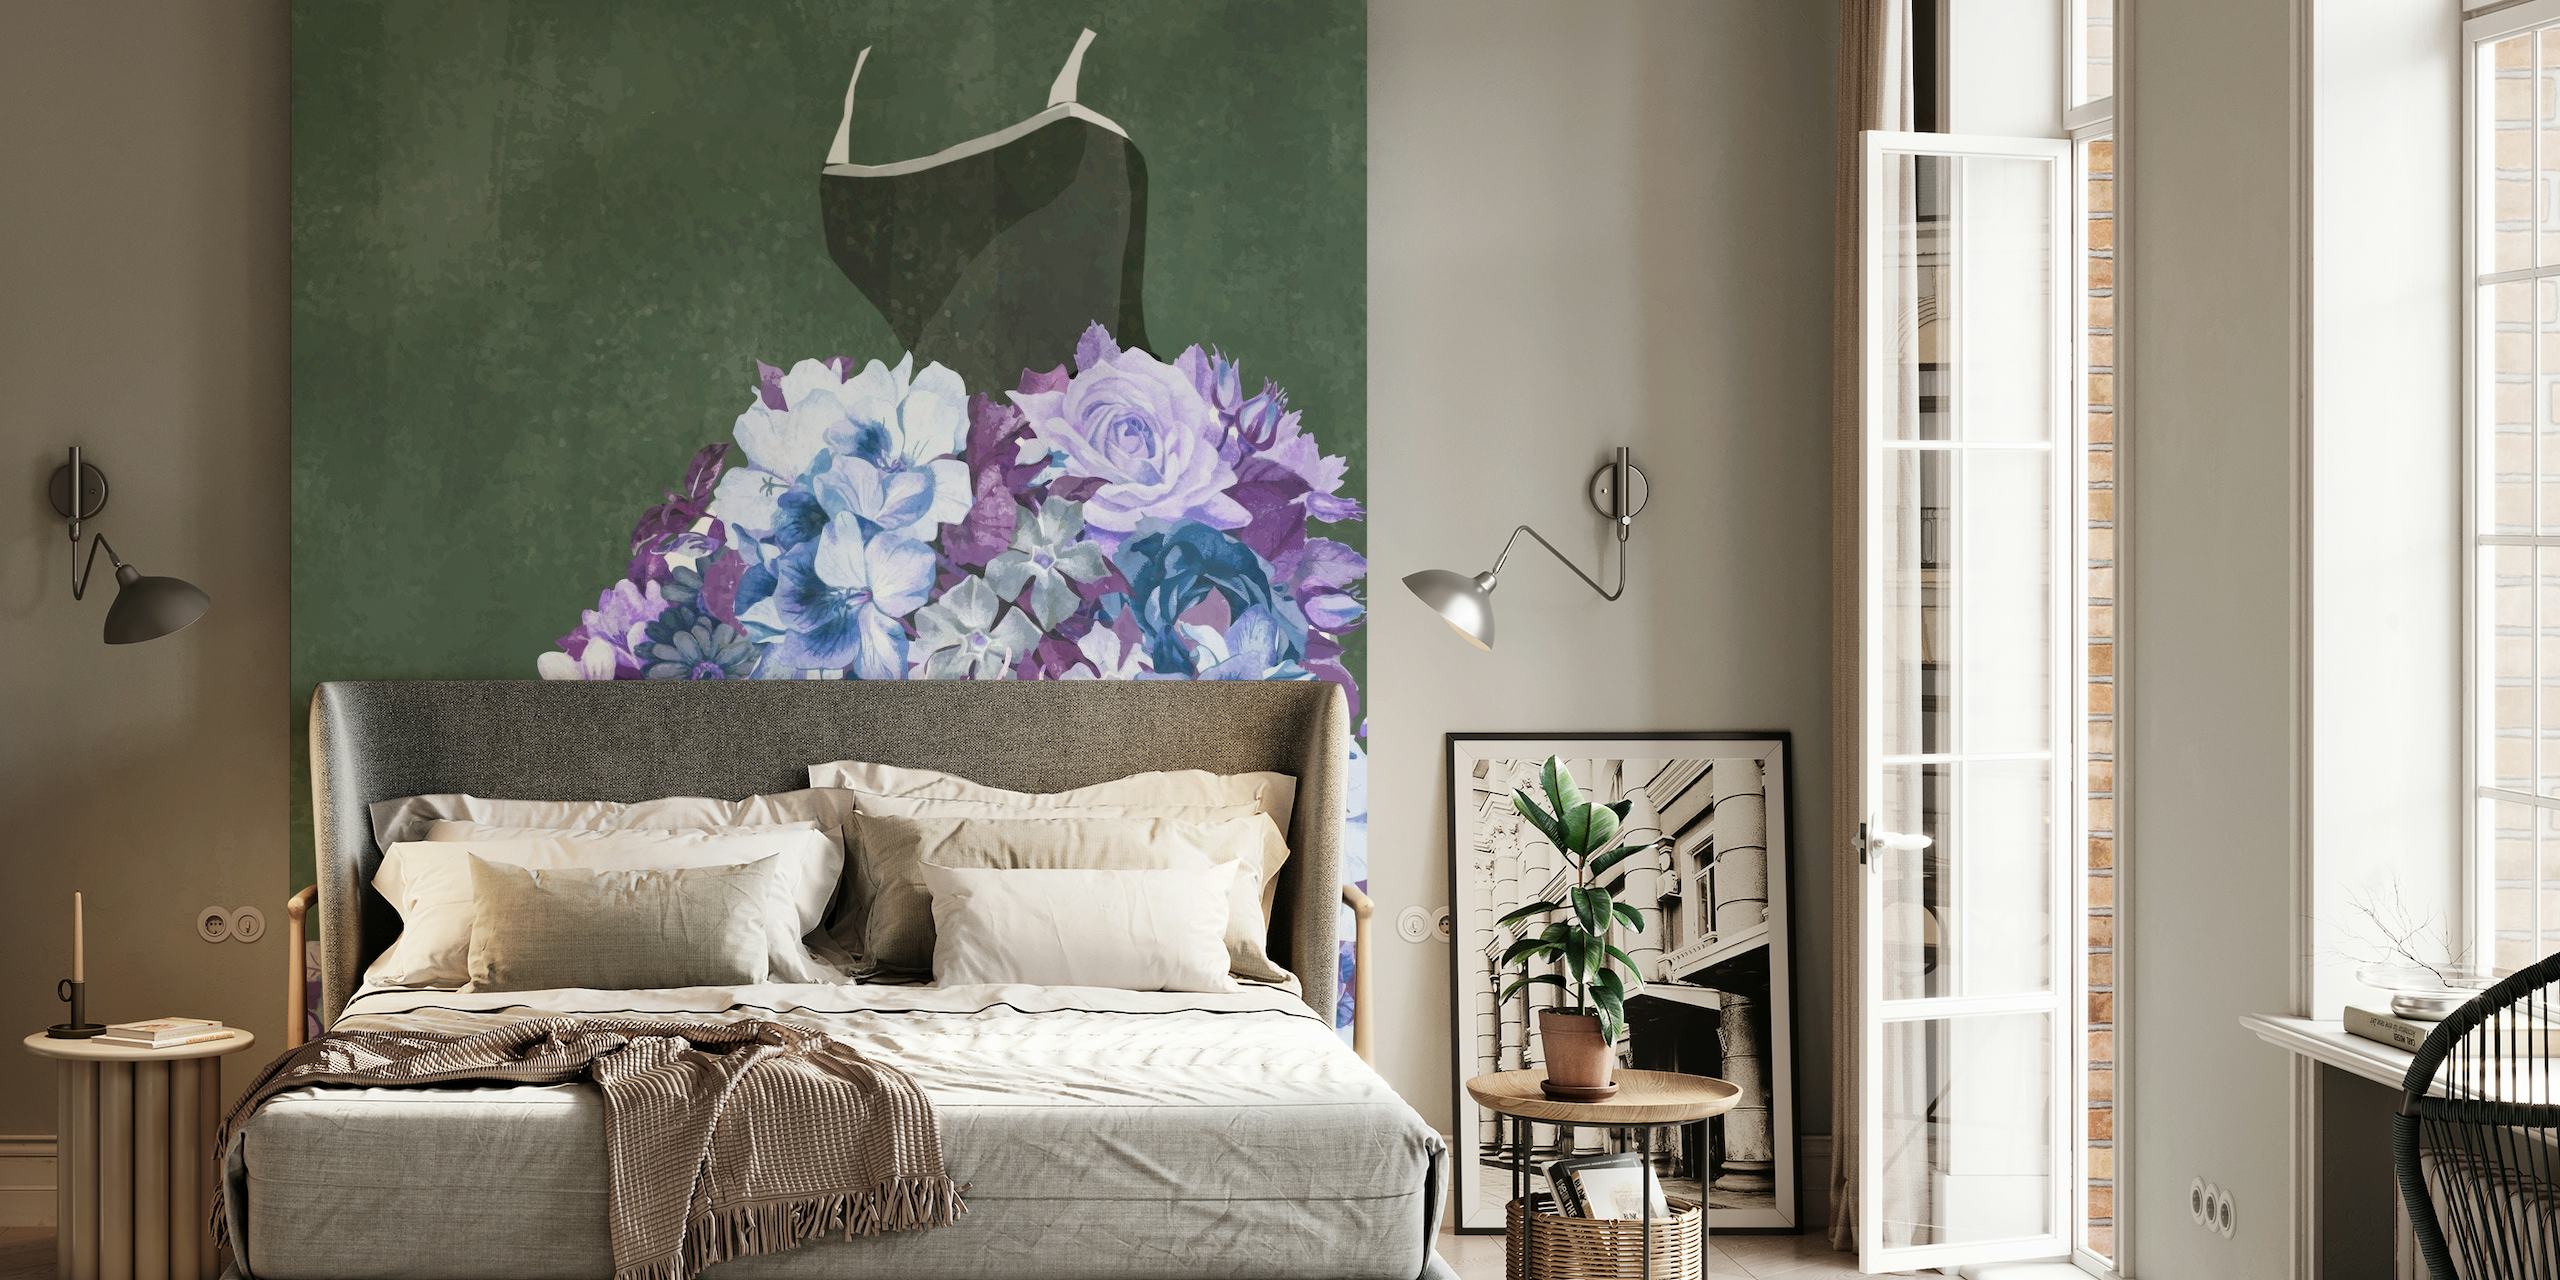 Vrouwelijke bloemenjurk muurschildering met bloemmotief op een zachte, gestructureerde achtergrond